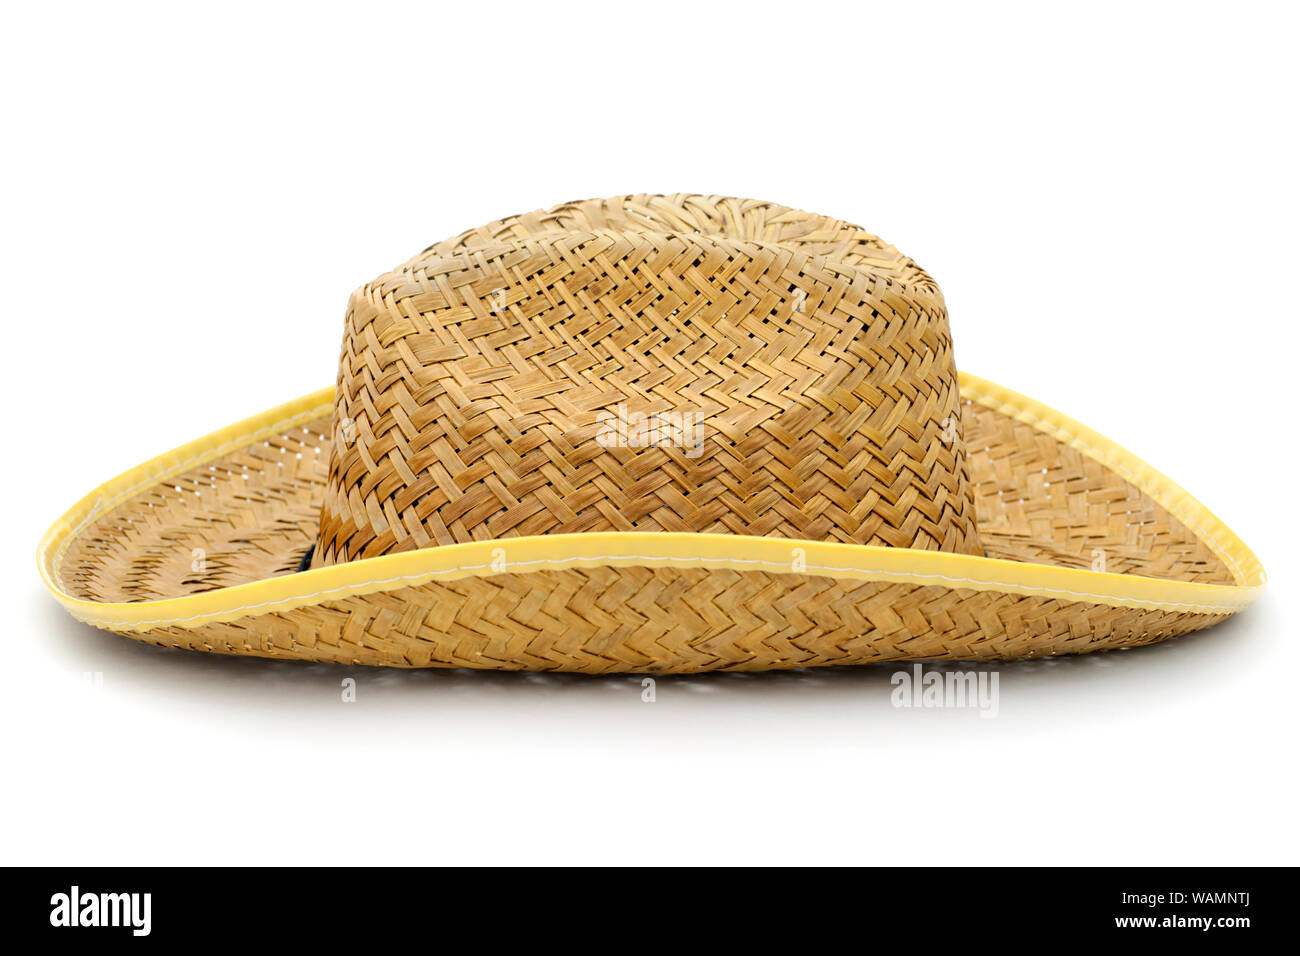 El Hombre En La Playa Con Un Sombrero De Paja De Panamá Fotos, retratos,  imágenes y fotografía de archivo libres de derecho. Image 11455859